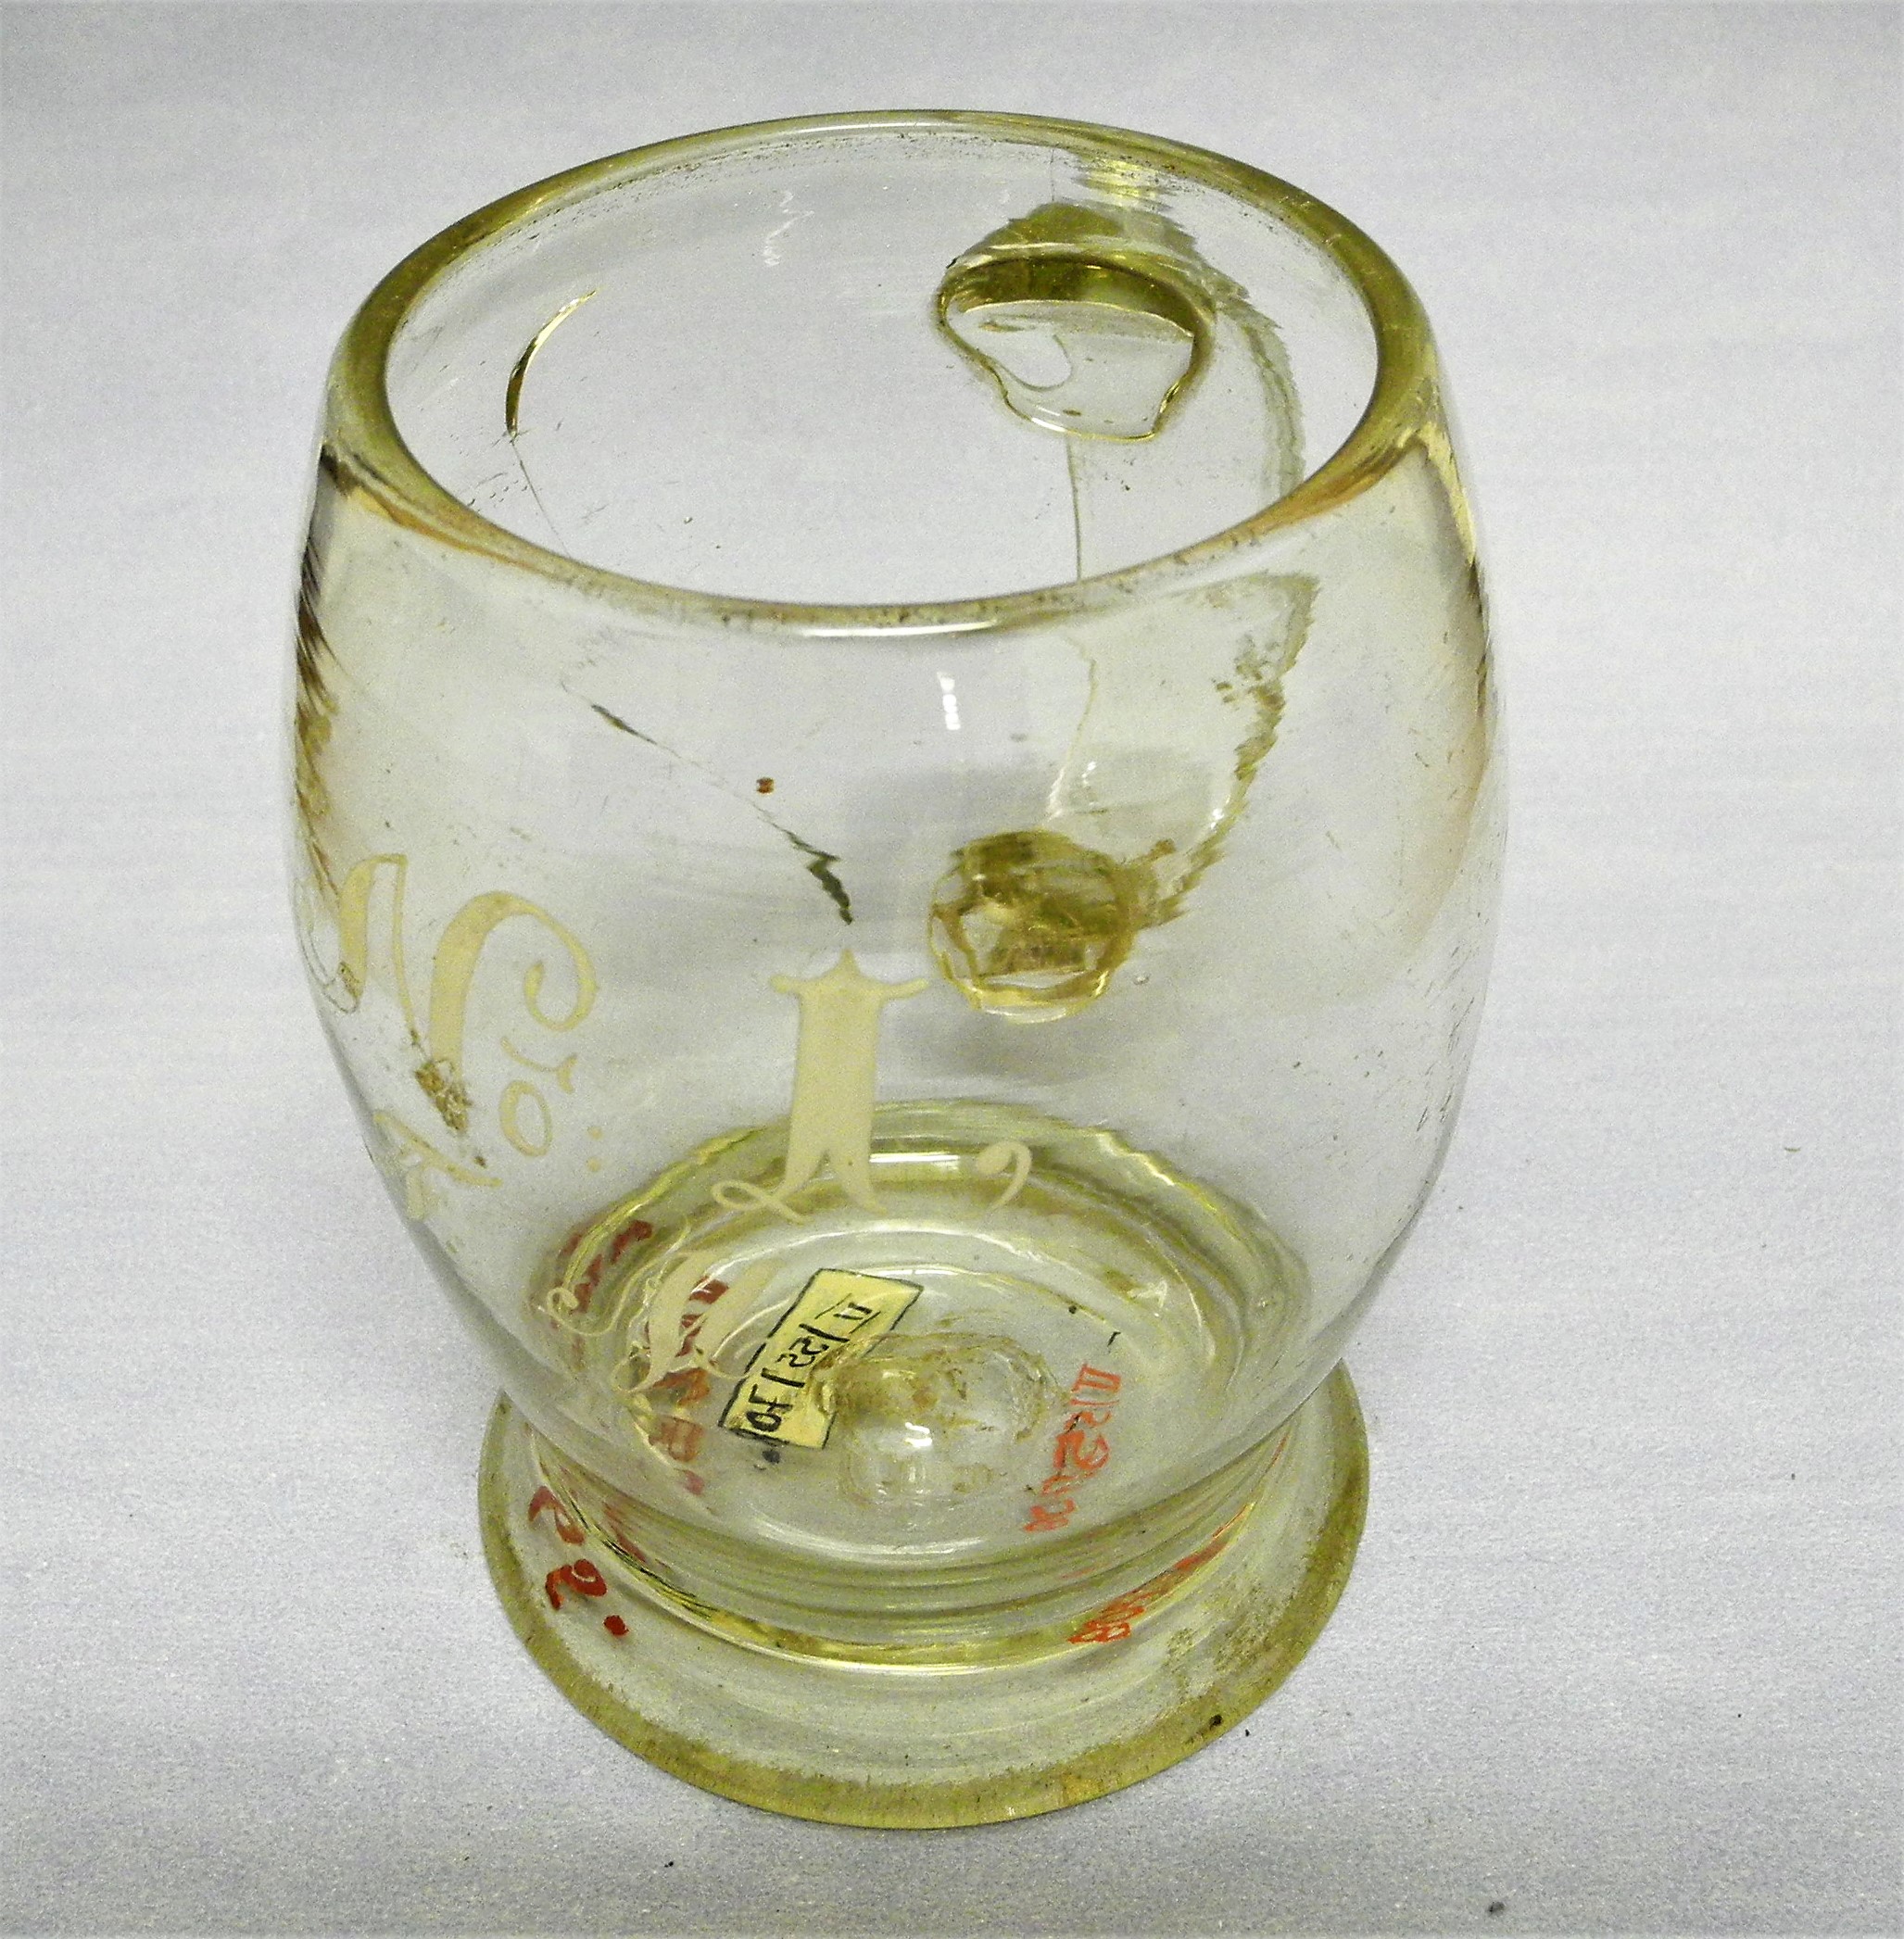 Braunbierglas mit Beschriftung (Erlebniswelt Museen e. V. CC BY-NC-SA)